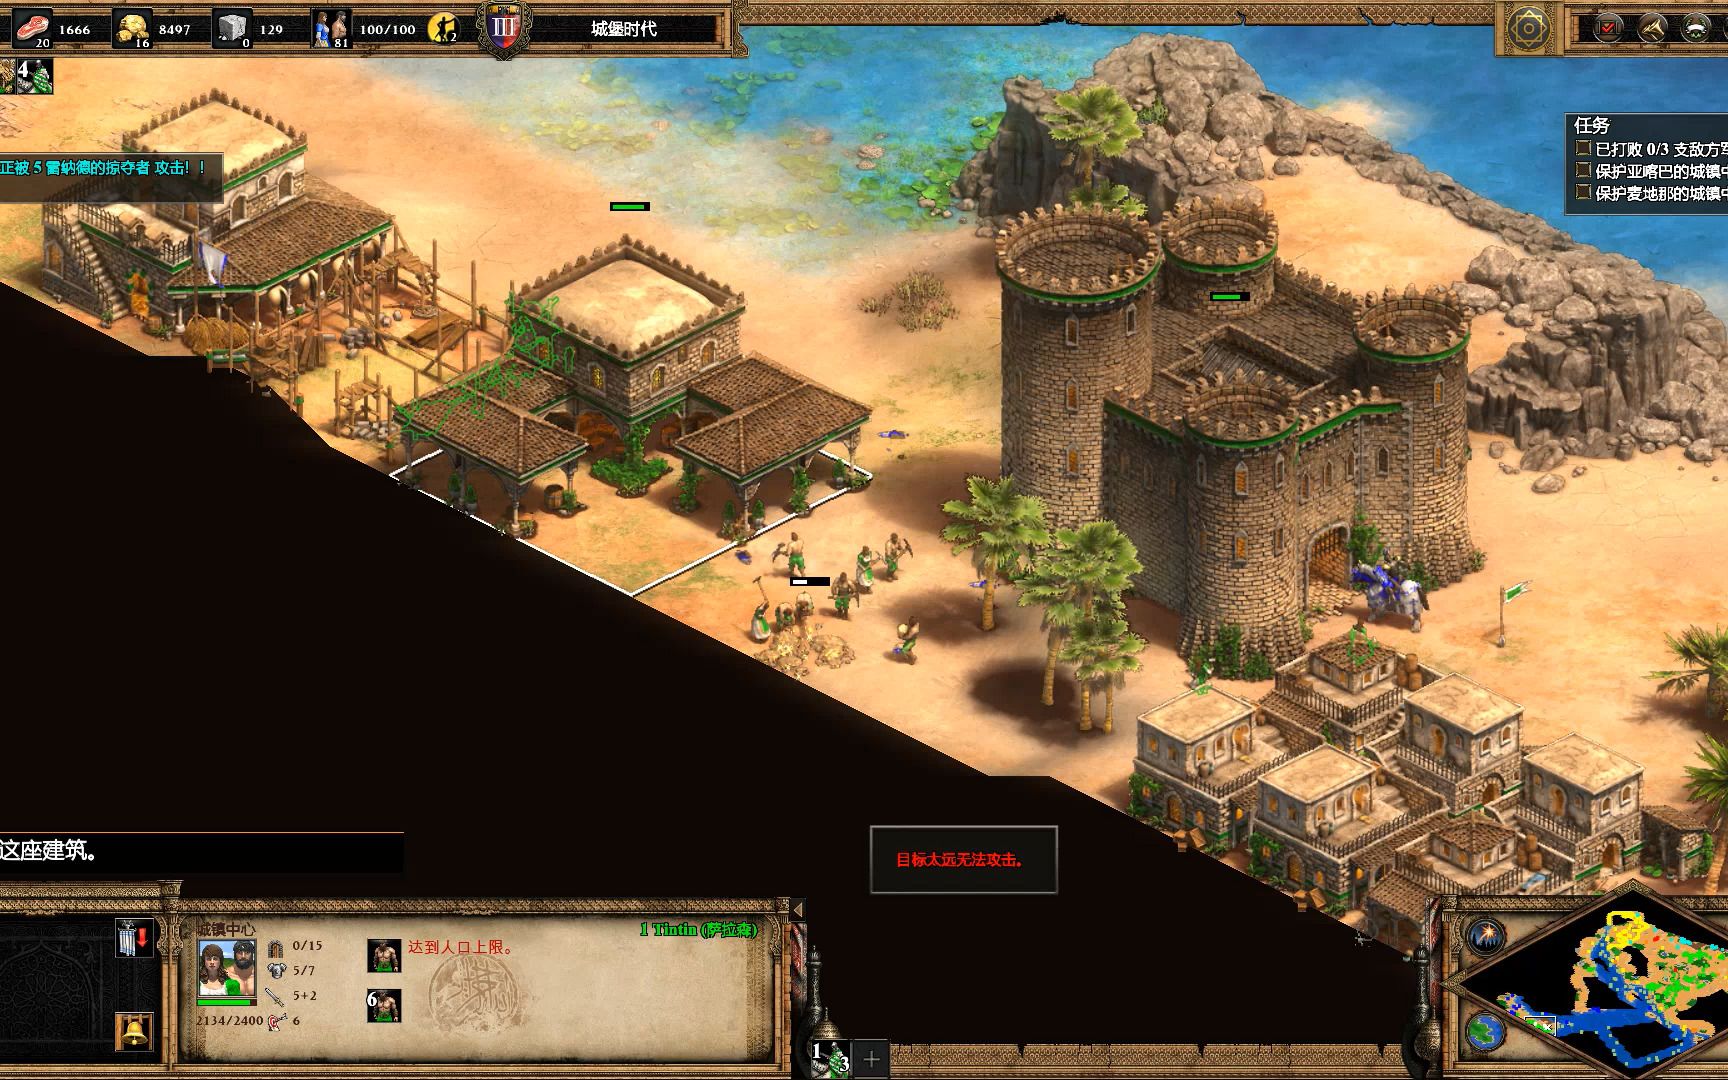 ageofempiresii帝国时代2游戏实况战役1非洲战役萨拉丁2阿拉伯之主2